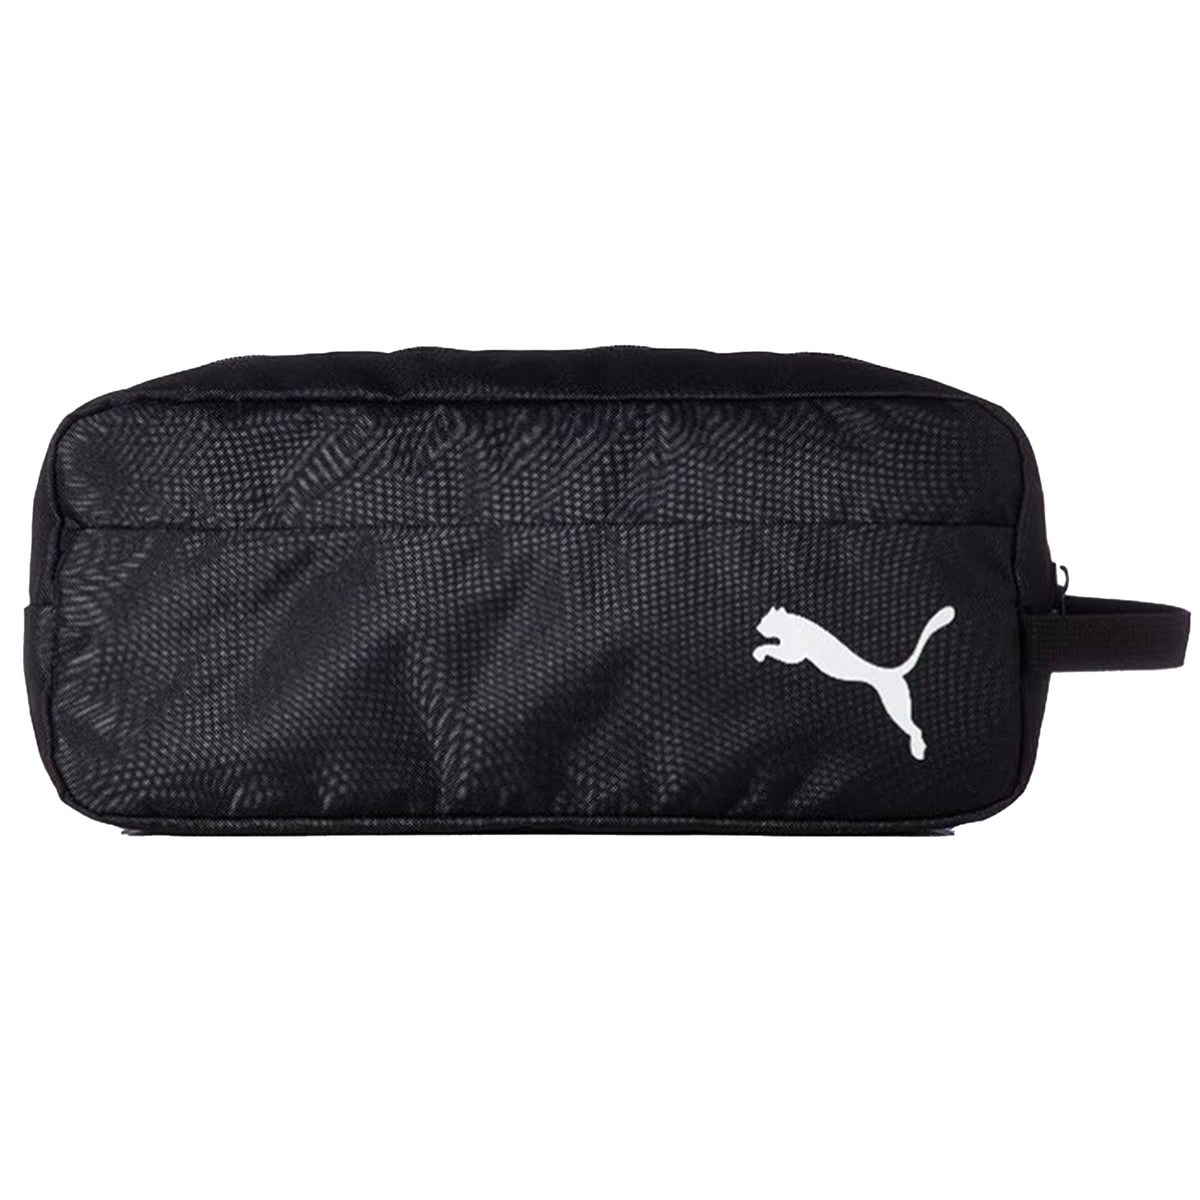 Puma Team Goal Shoe Bag: Black